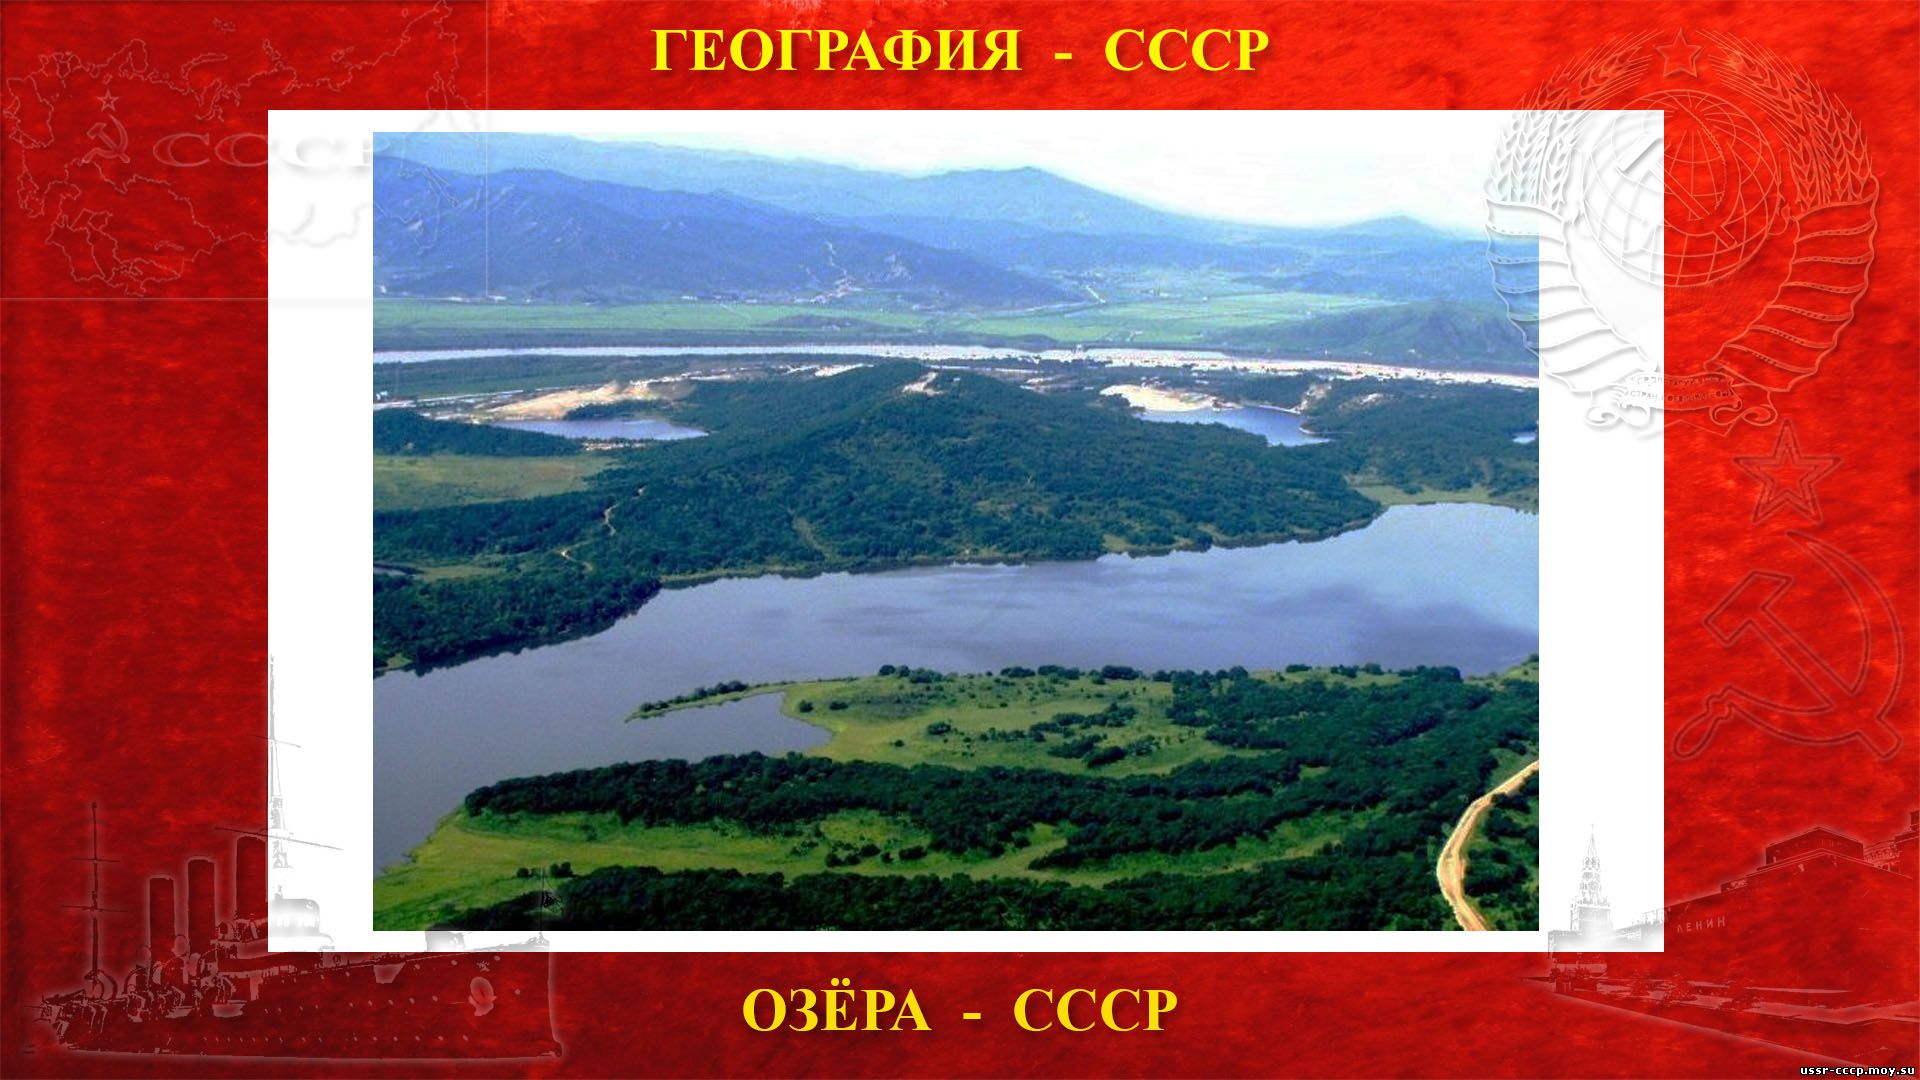 Хасан — Озеро пресноводное в СССР